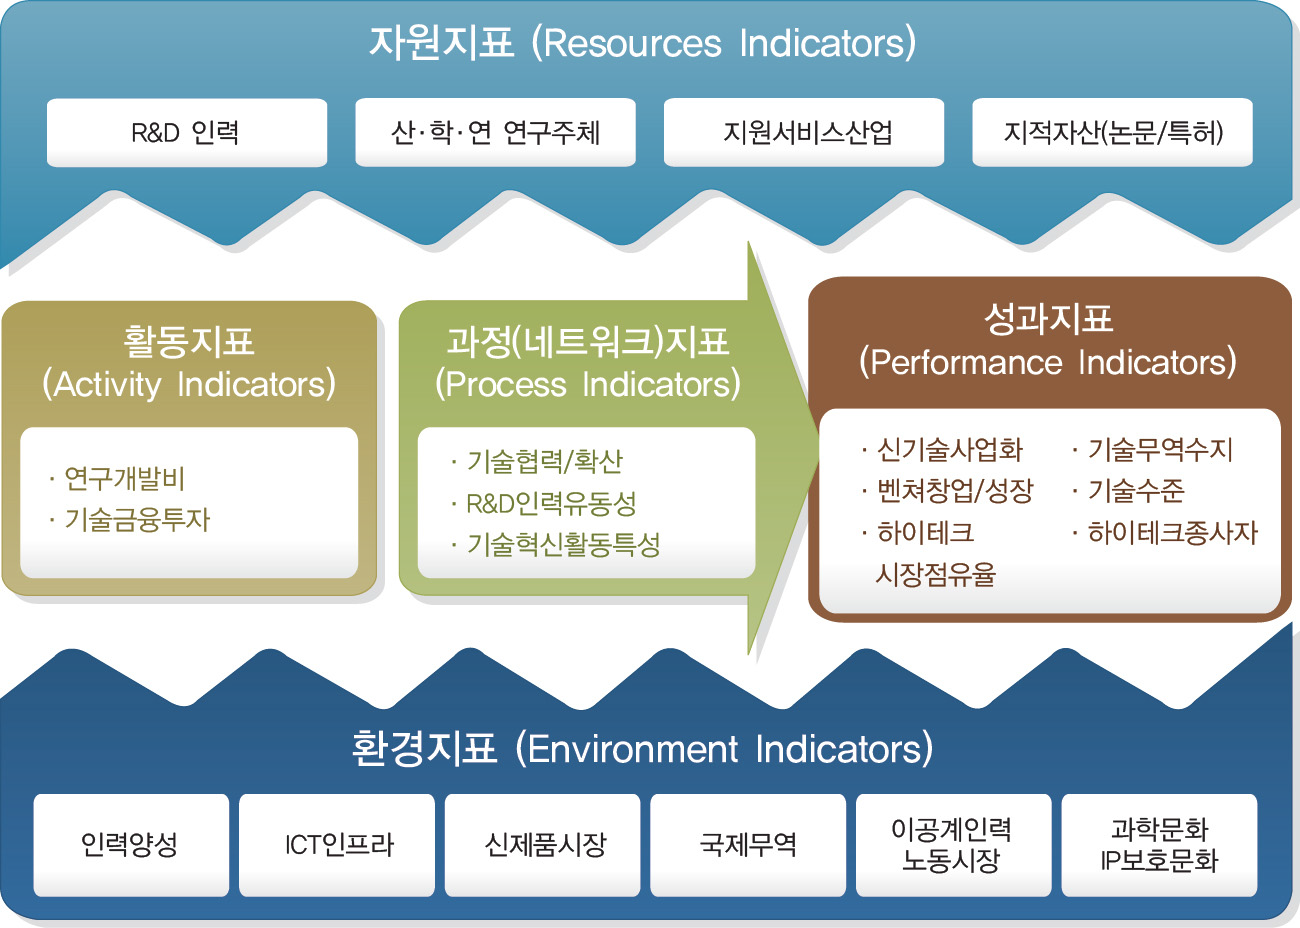 지역 과학기술혁신역량평가 모형의 기본 틀(개념모형)